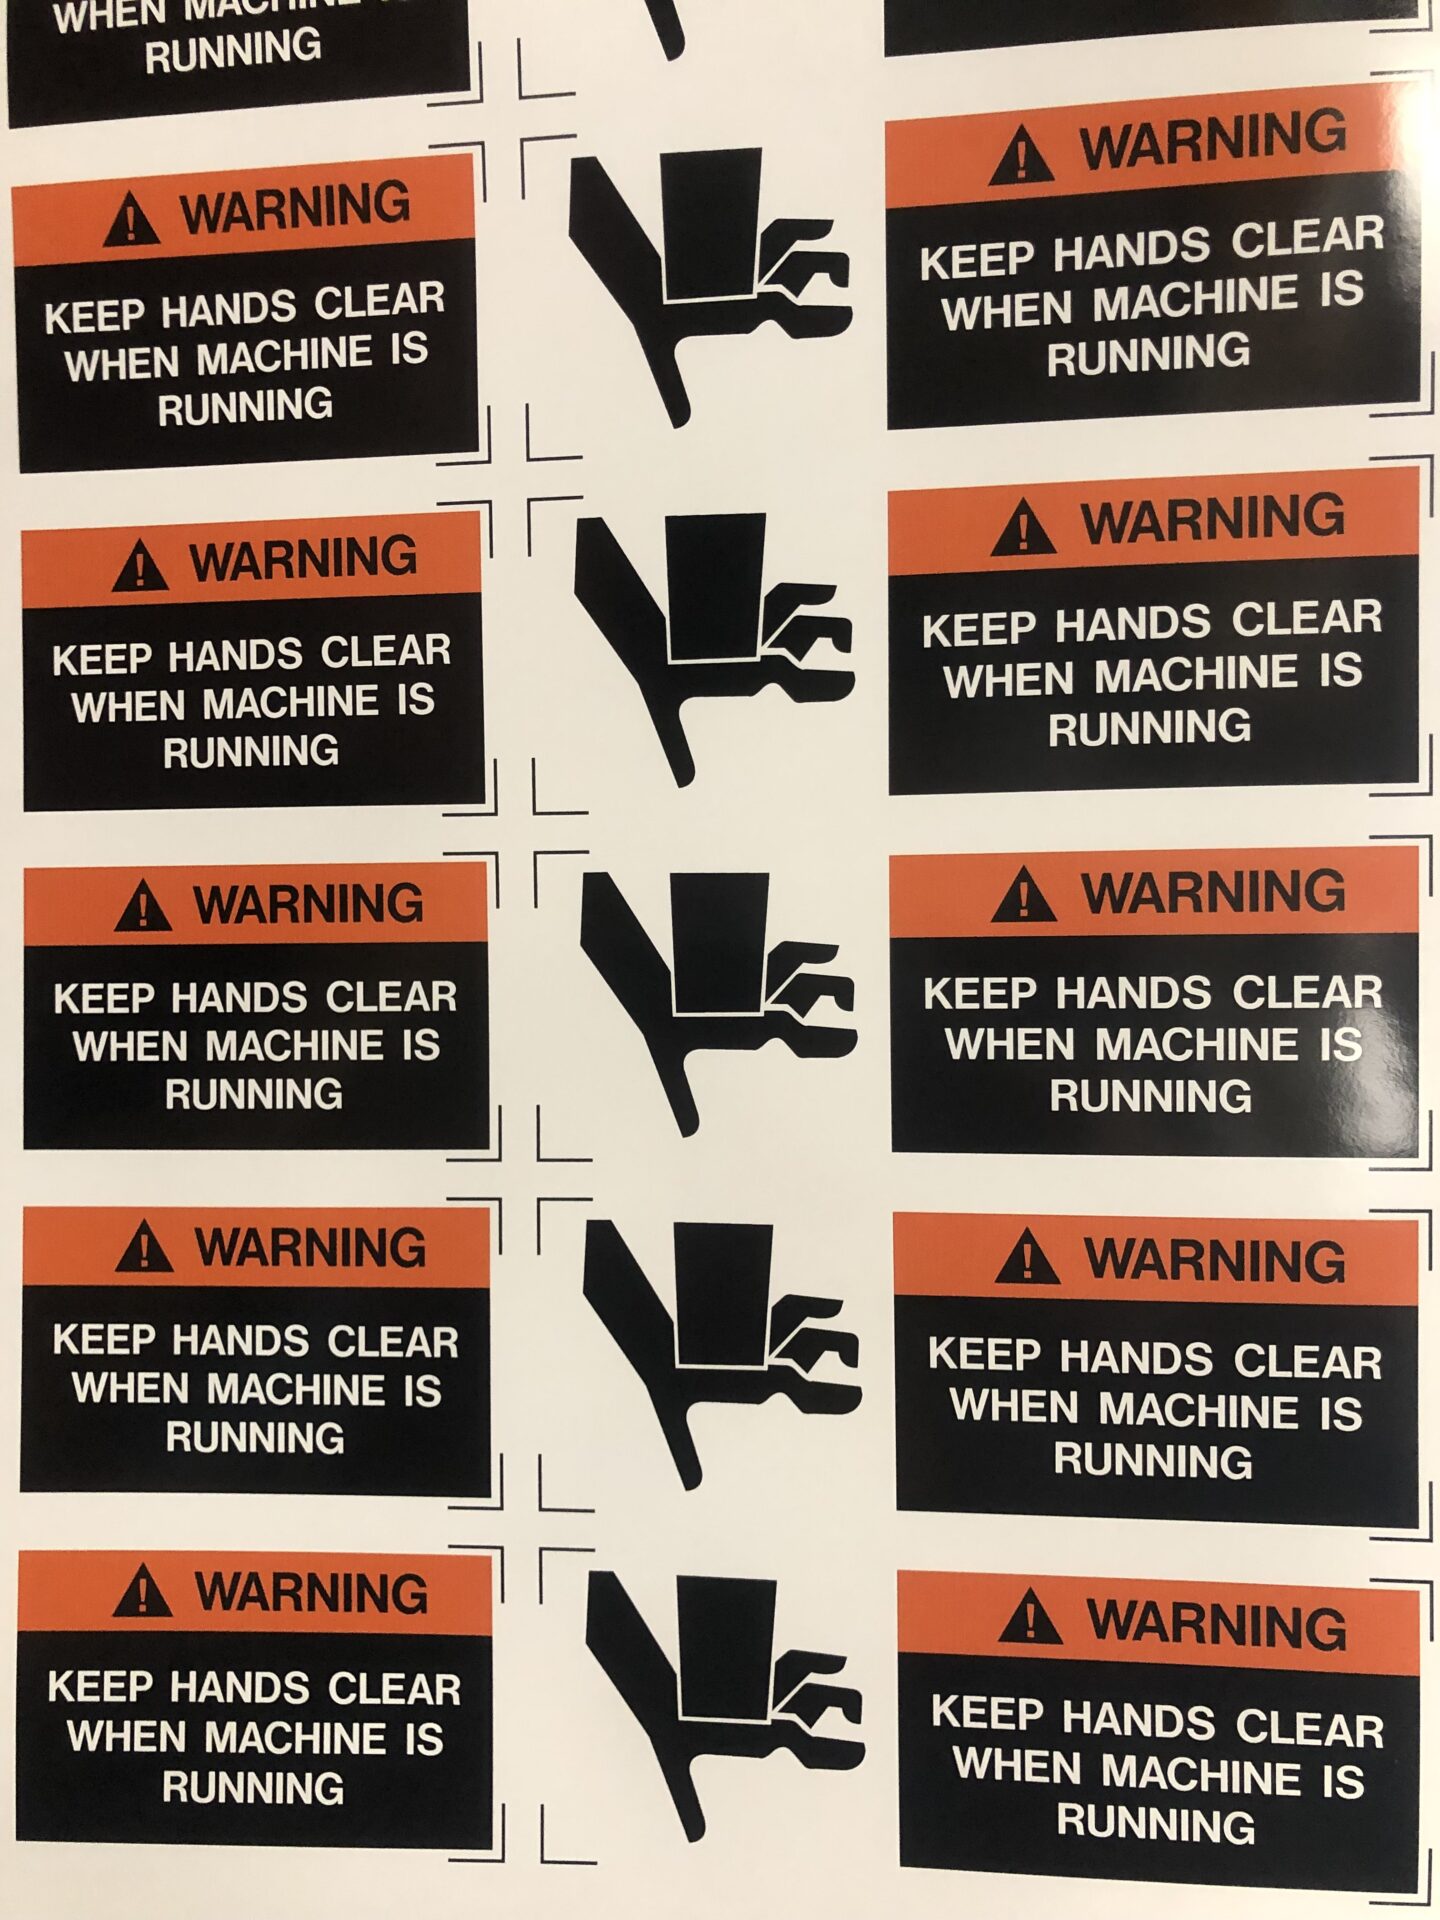 Signs Printing